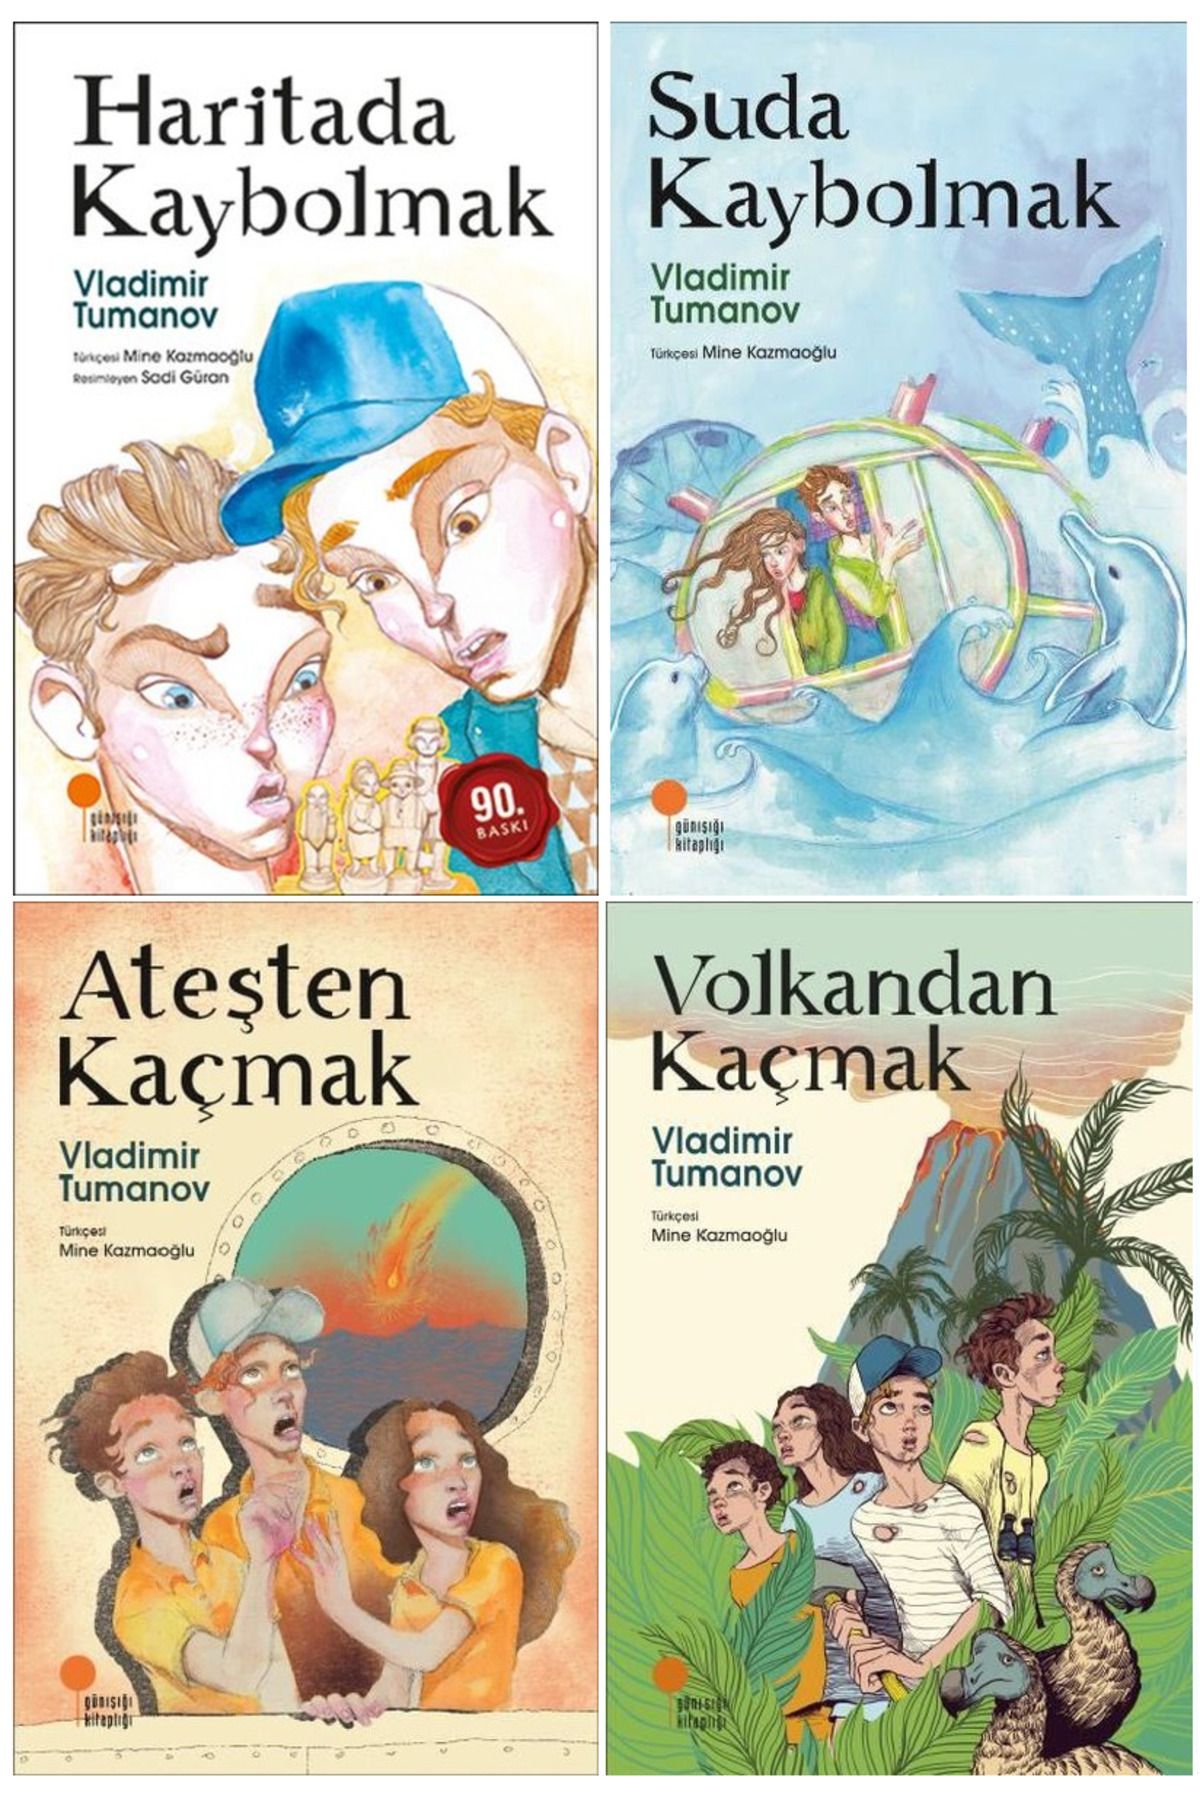 Günışığı Kitaplığı Vladimir Tumanov Gizemli Haritalar Serisi 4 Kitap Set / Volkandan Kaçmak - Haritada Kaybolmak